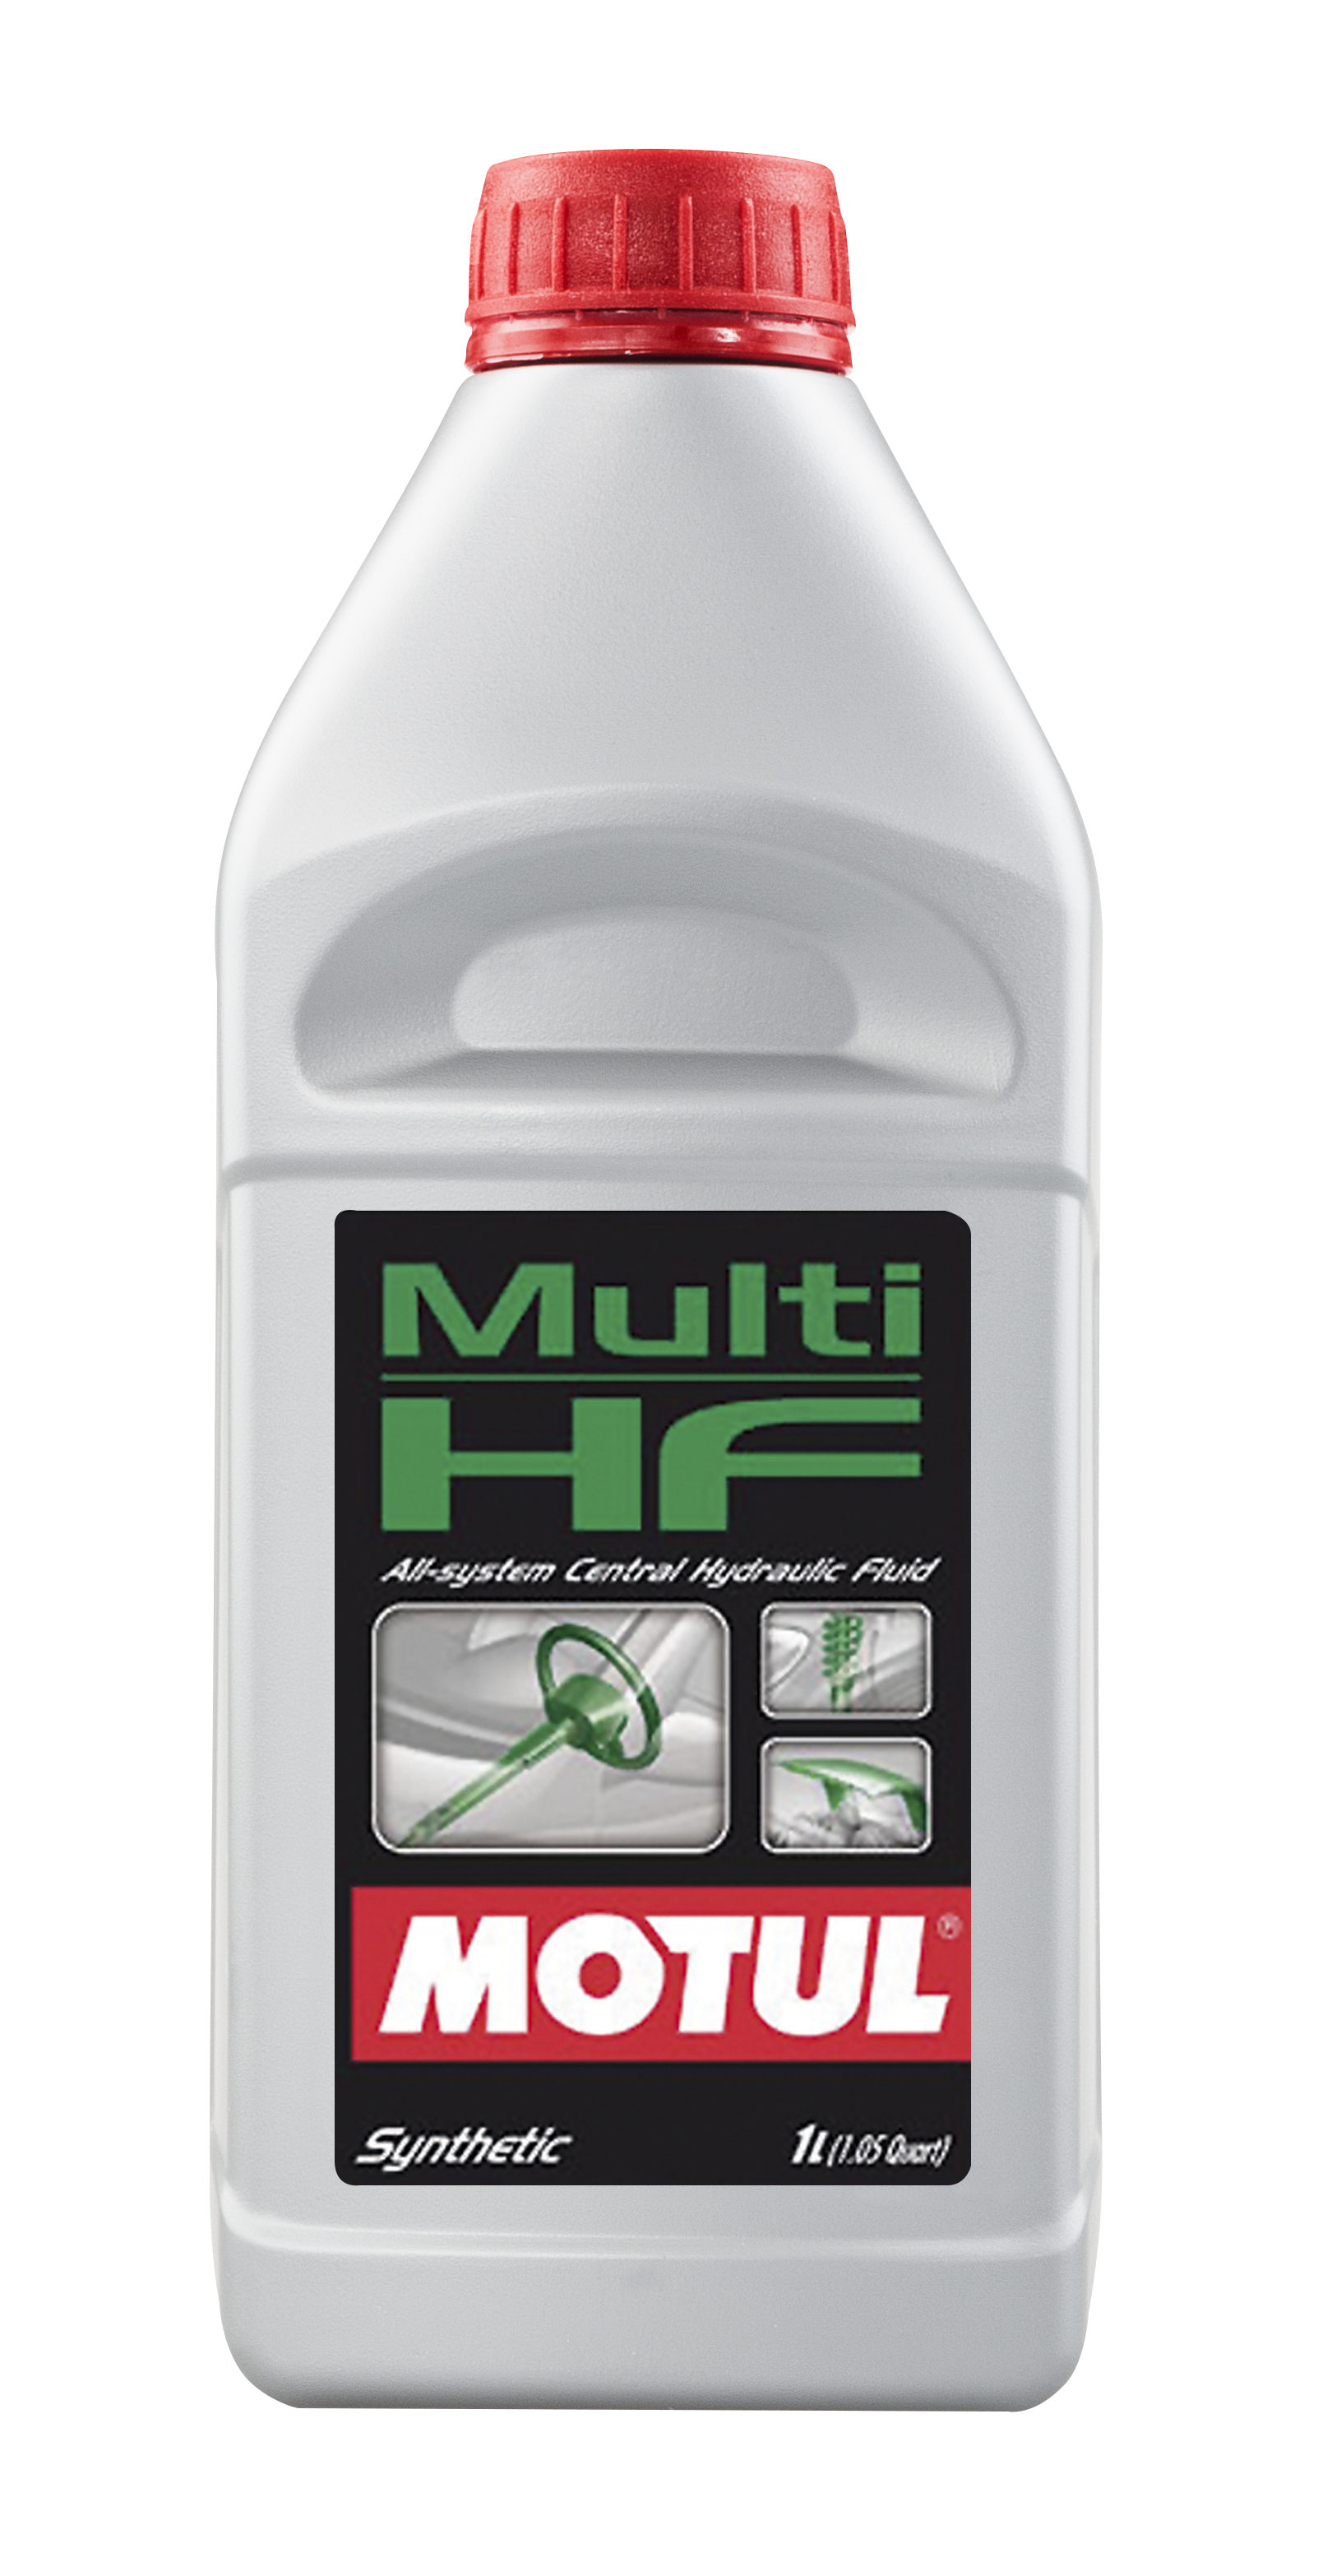 Гидравлическое масло в гур. Motul Multi HF 1л. Жидкость ГУР Motul Multi HF. Motul 106399 жидкость ГУР. Мотюль для гидроусилителя руля.